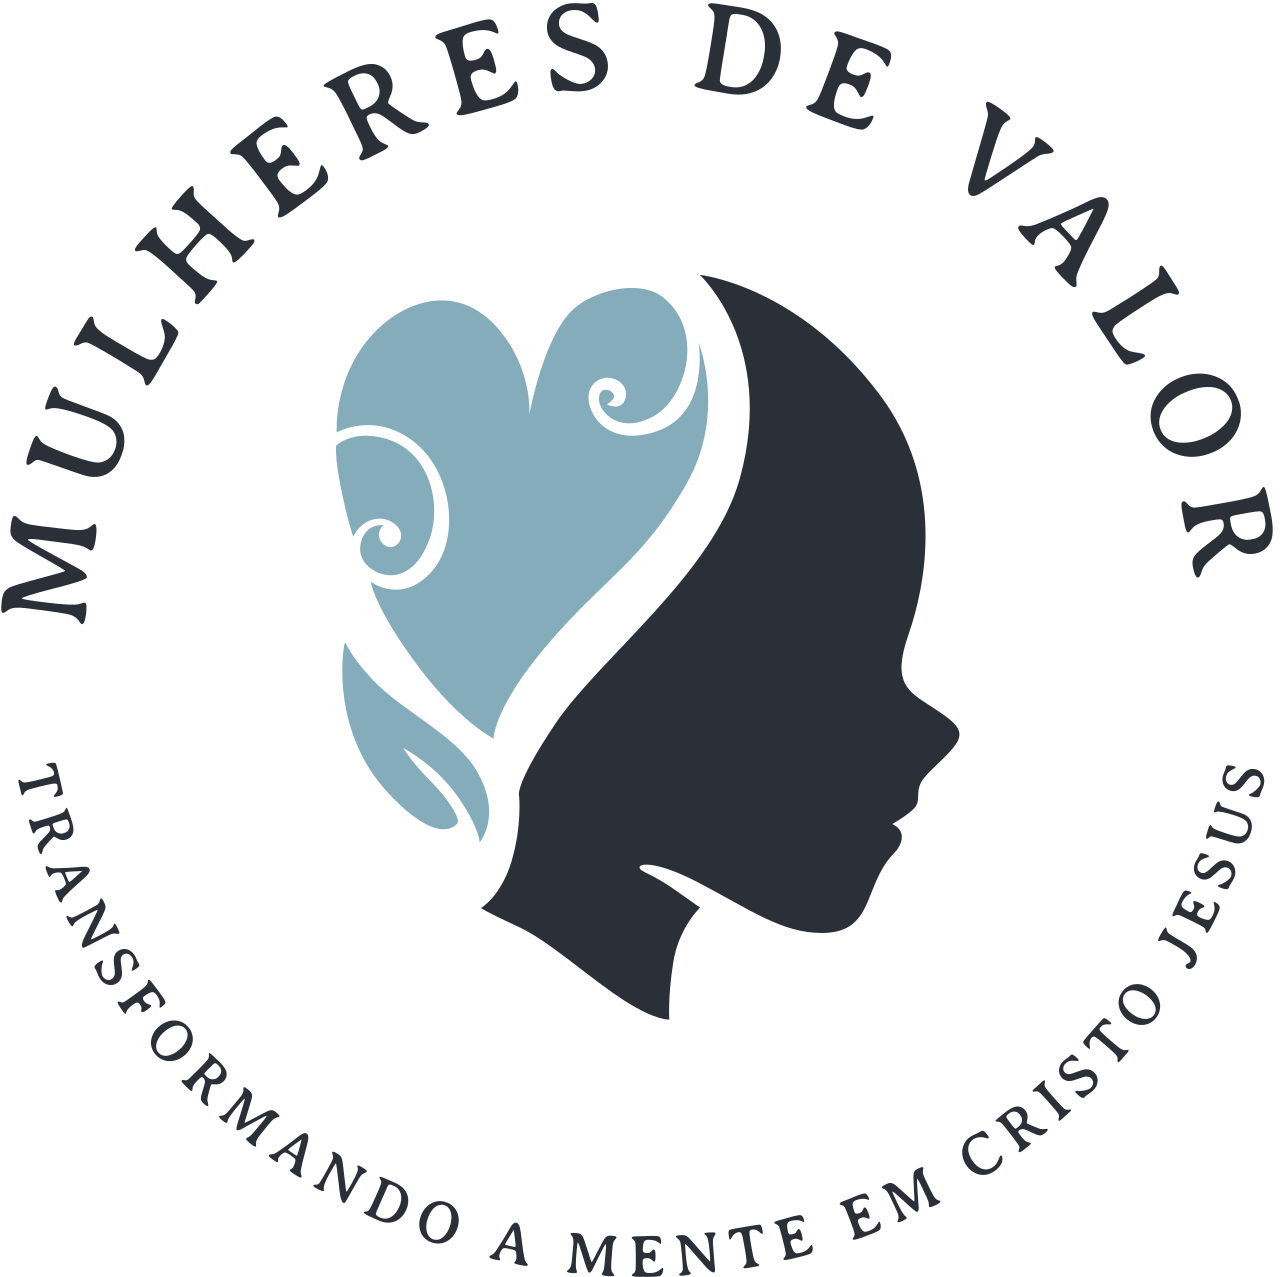 MULHERES DE VALOR 's logo